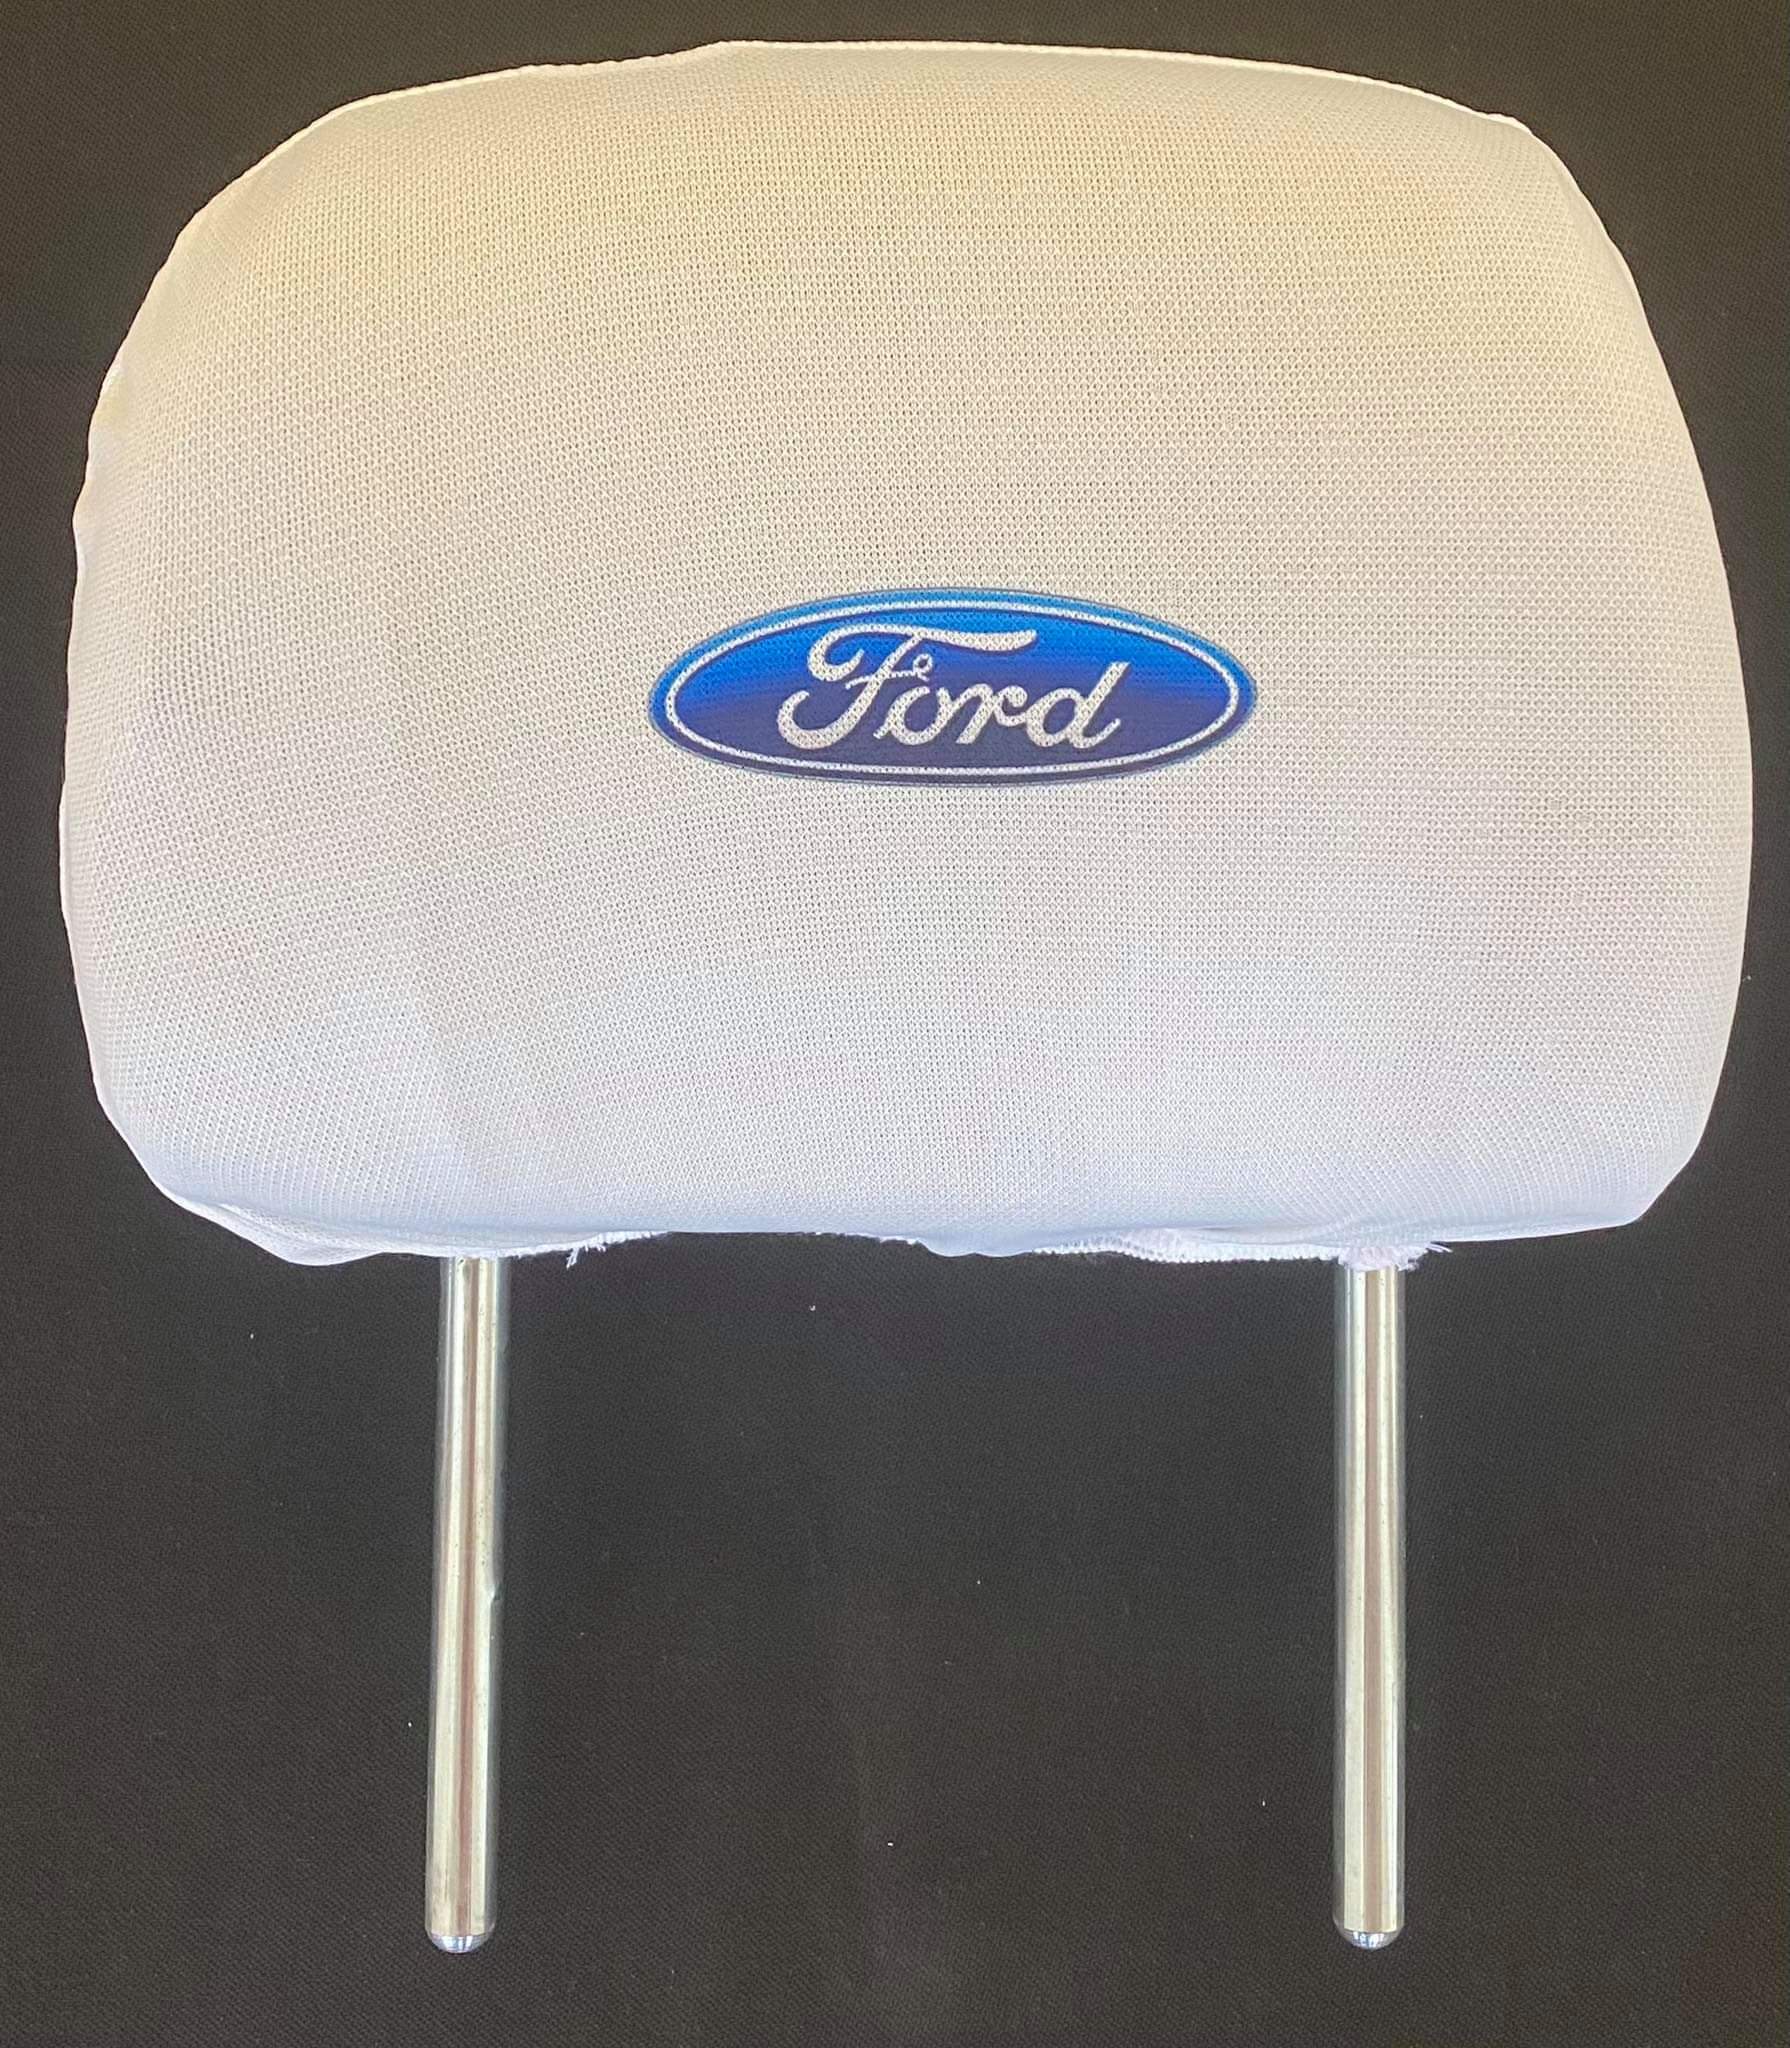 Biele návleky na opierky hlavy s logom Ford - 2ks